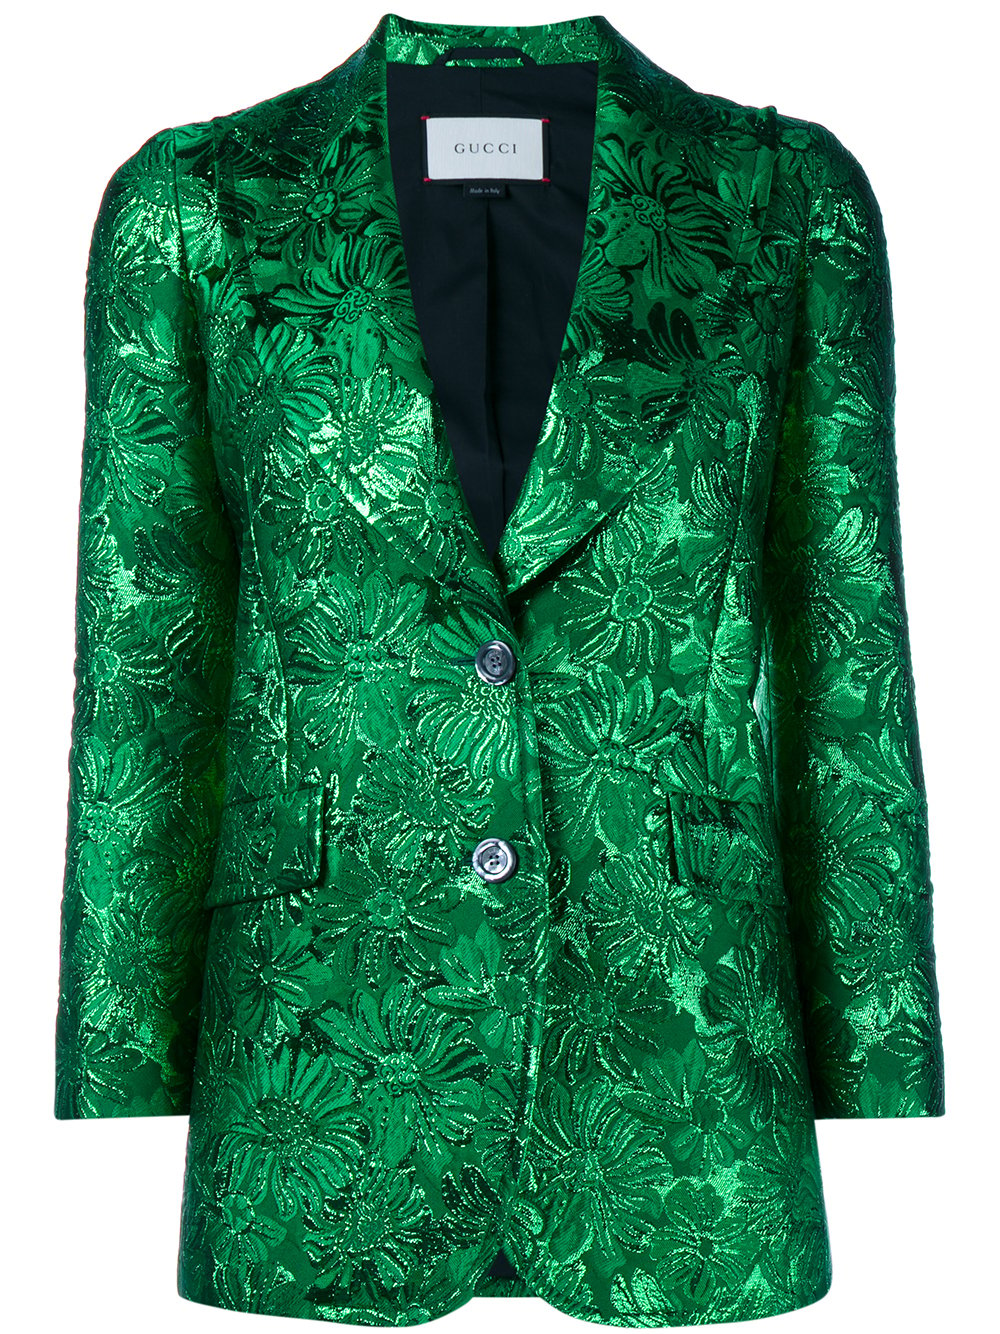 Brocade Fabric Emerald Green color 44" wide BRO72[2]